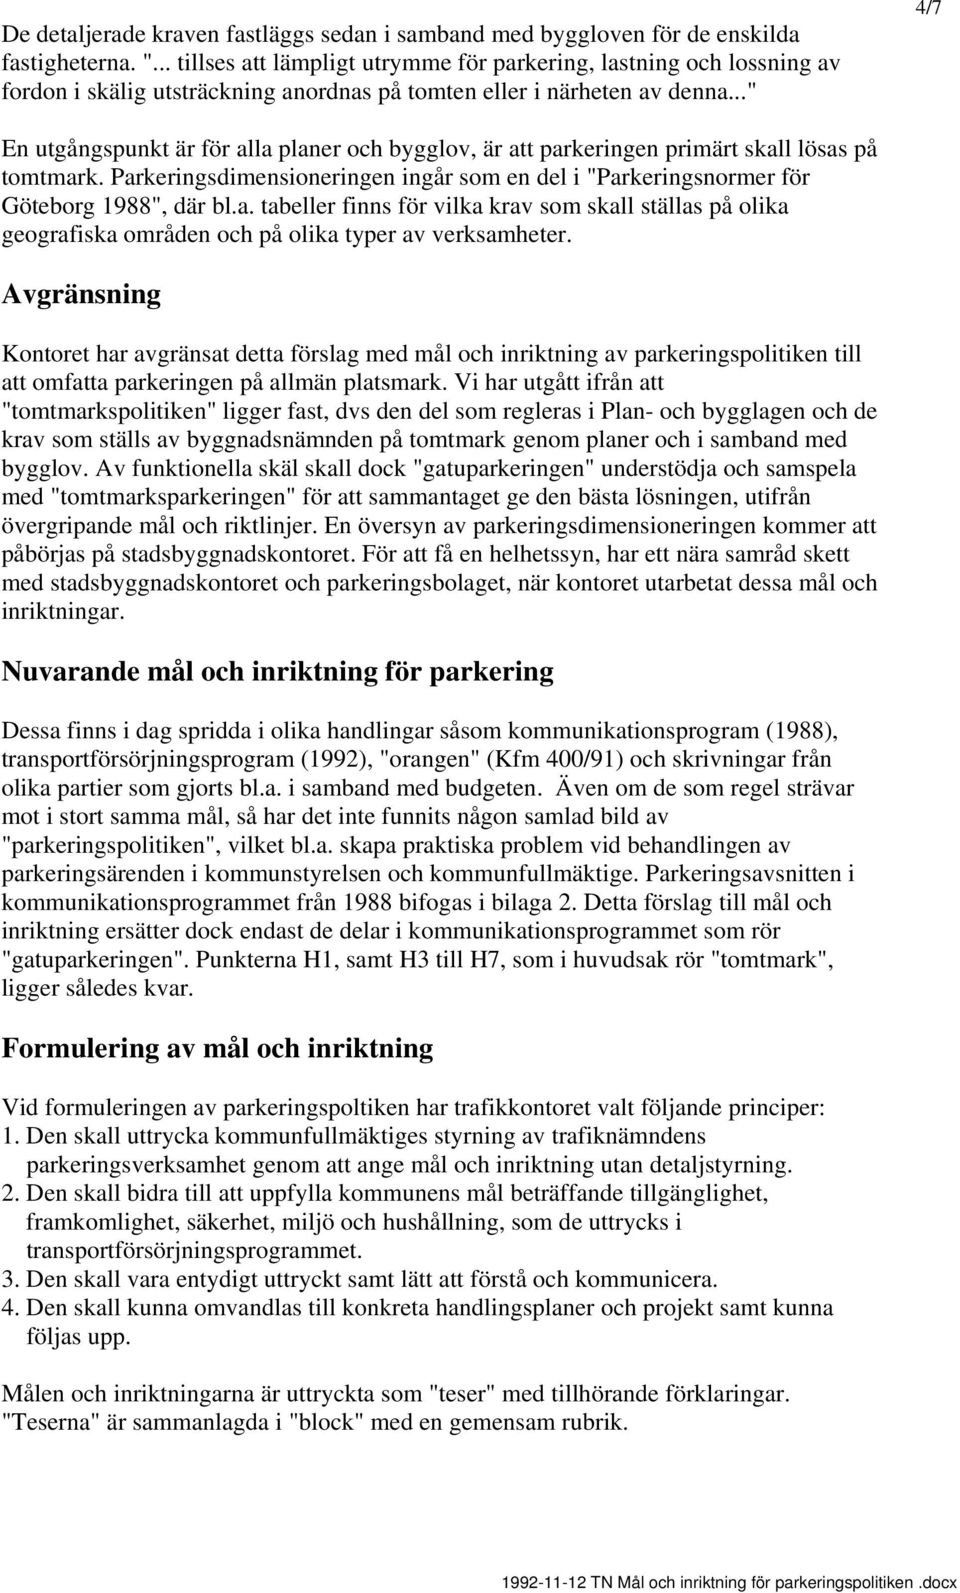 .." 4/7 En utgångspunkt är för alla planer och bygglov, är parkeringen primärt skall lösas på tomtmark. Parkeringsdimensioneringen ingår som en del i "Parkeringsnormer för Göteborg 1988", där bl.a. tabeller finns för vilka krav som skall ställas på olika geografiska områden och på olika typer av verksamheter.